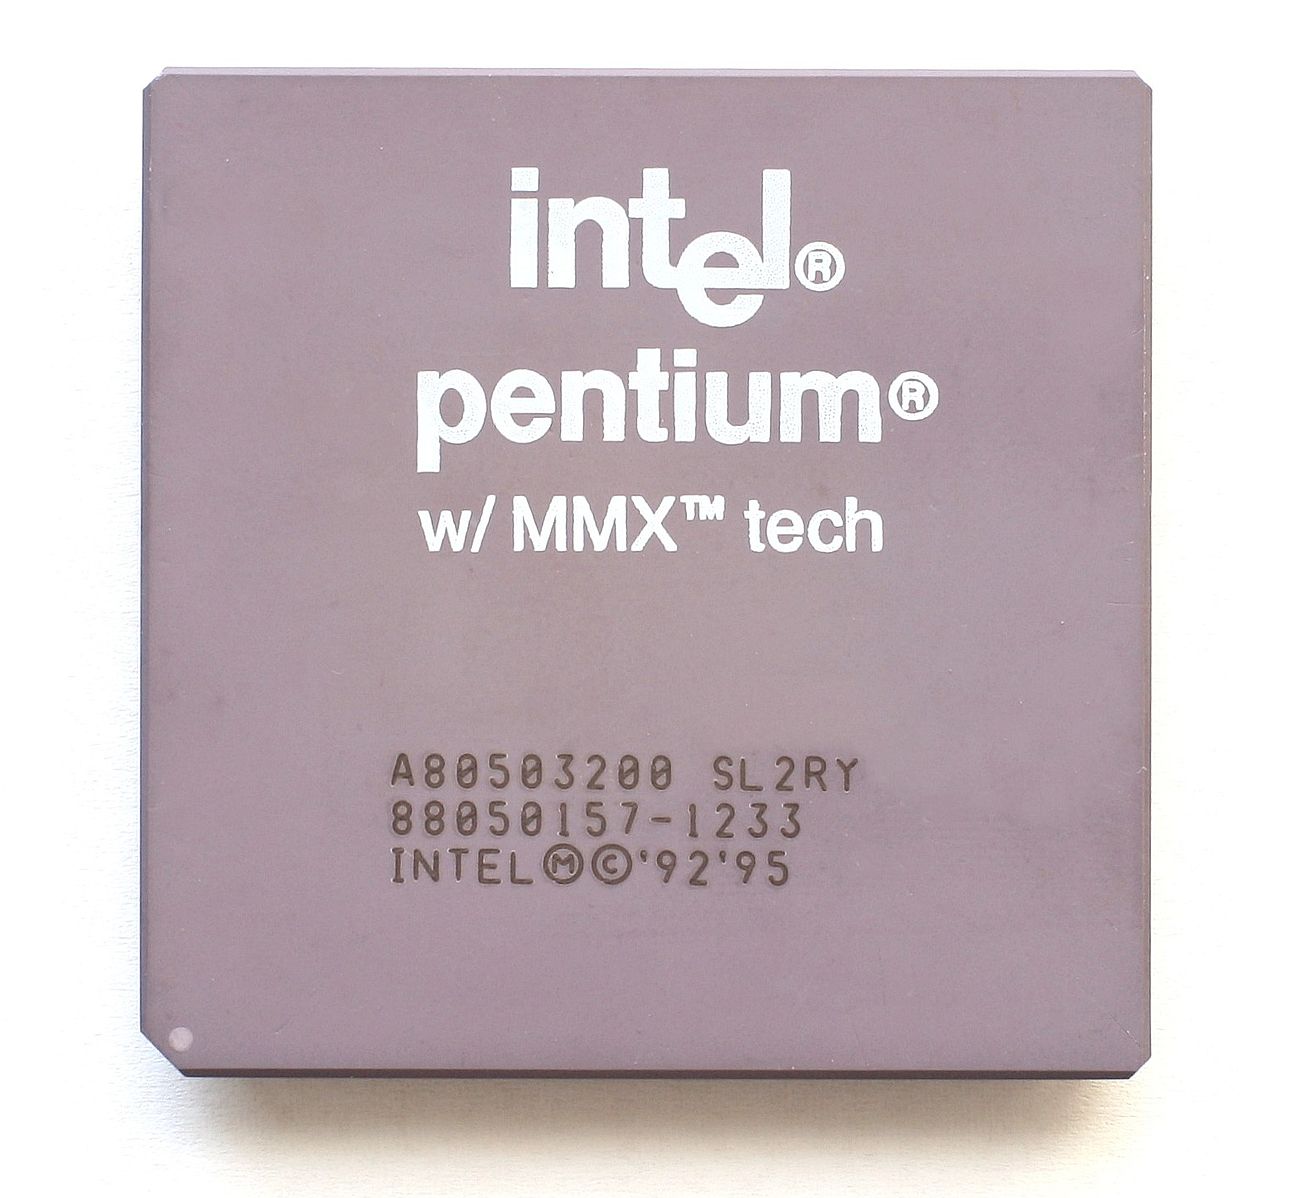 Kupiłem sobie Intel Pentium MMX 200 - retro, ten sprzęt kiedyś rządził